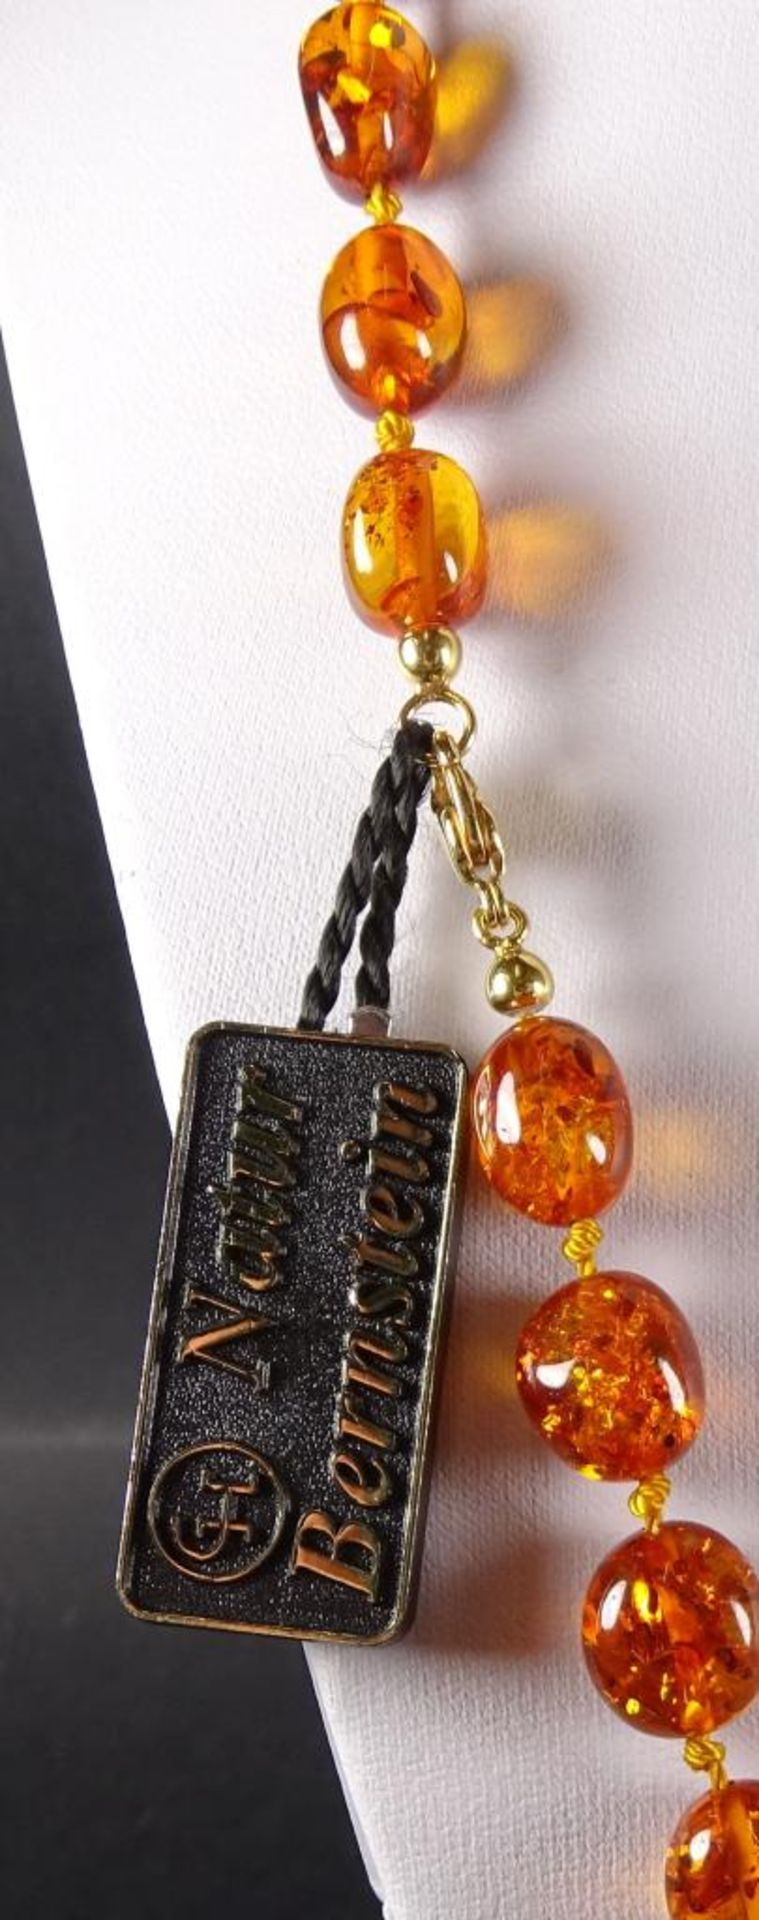 Bernstein Halskette,L-56cm,27gr.,ungetragene Ware, aus Juweliersauflösun - Bild 6 aus 6